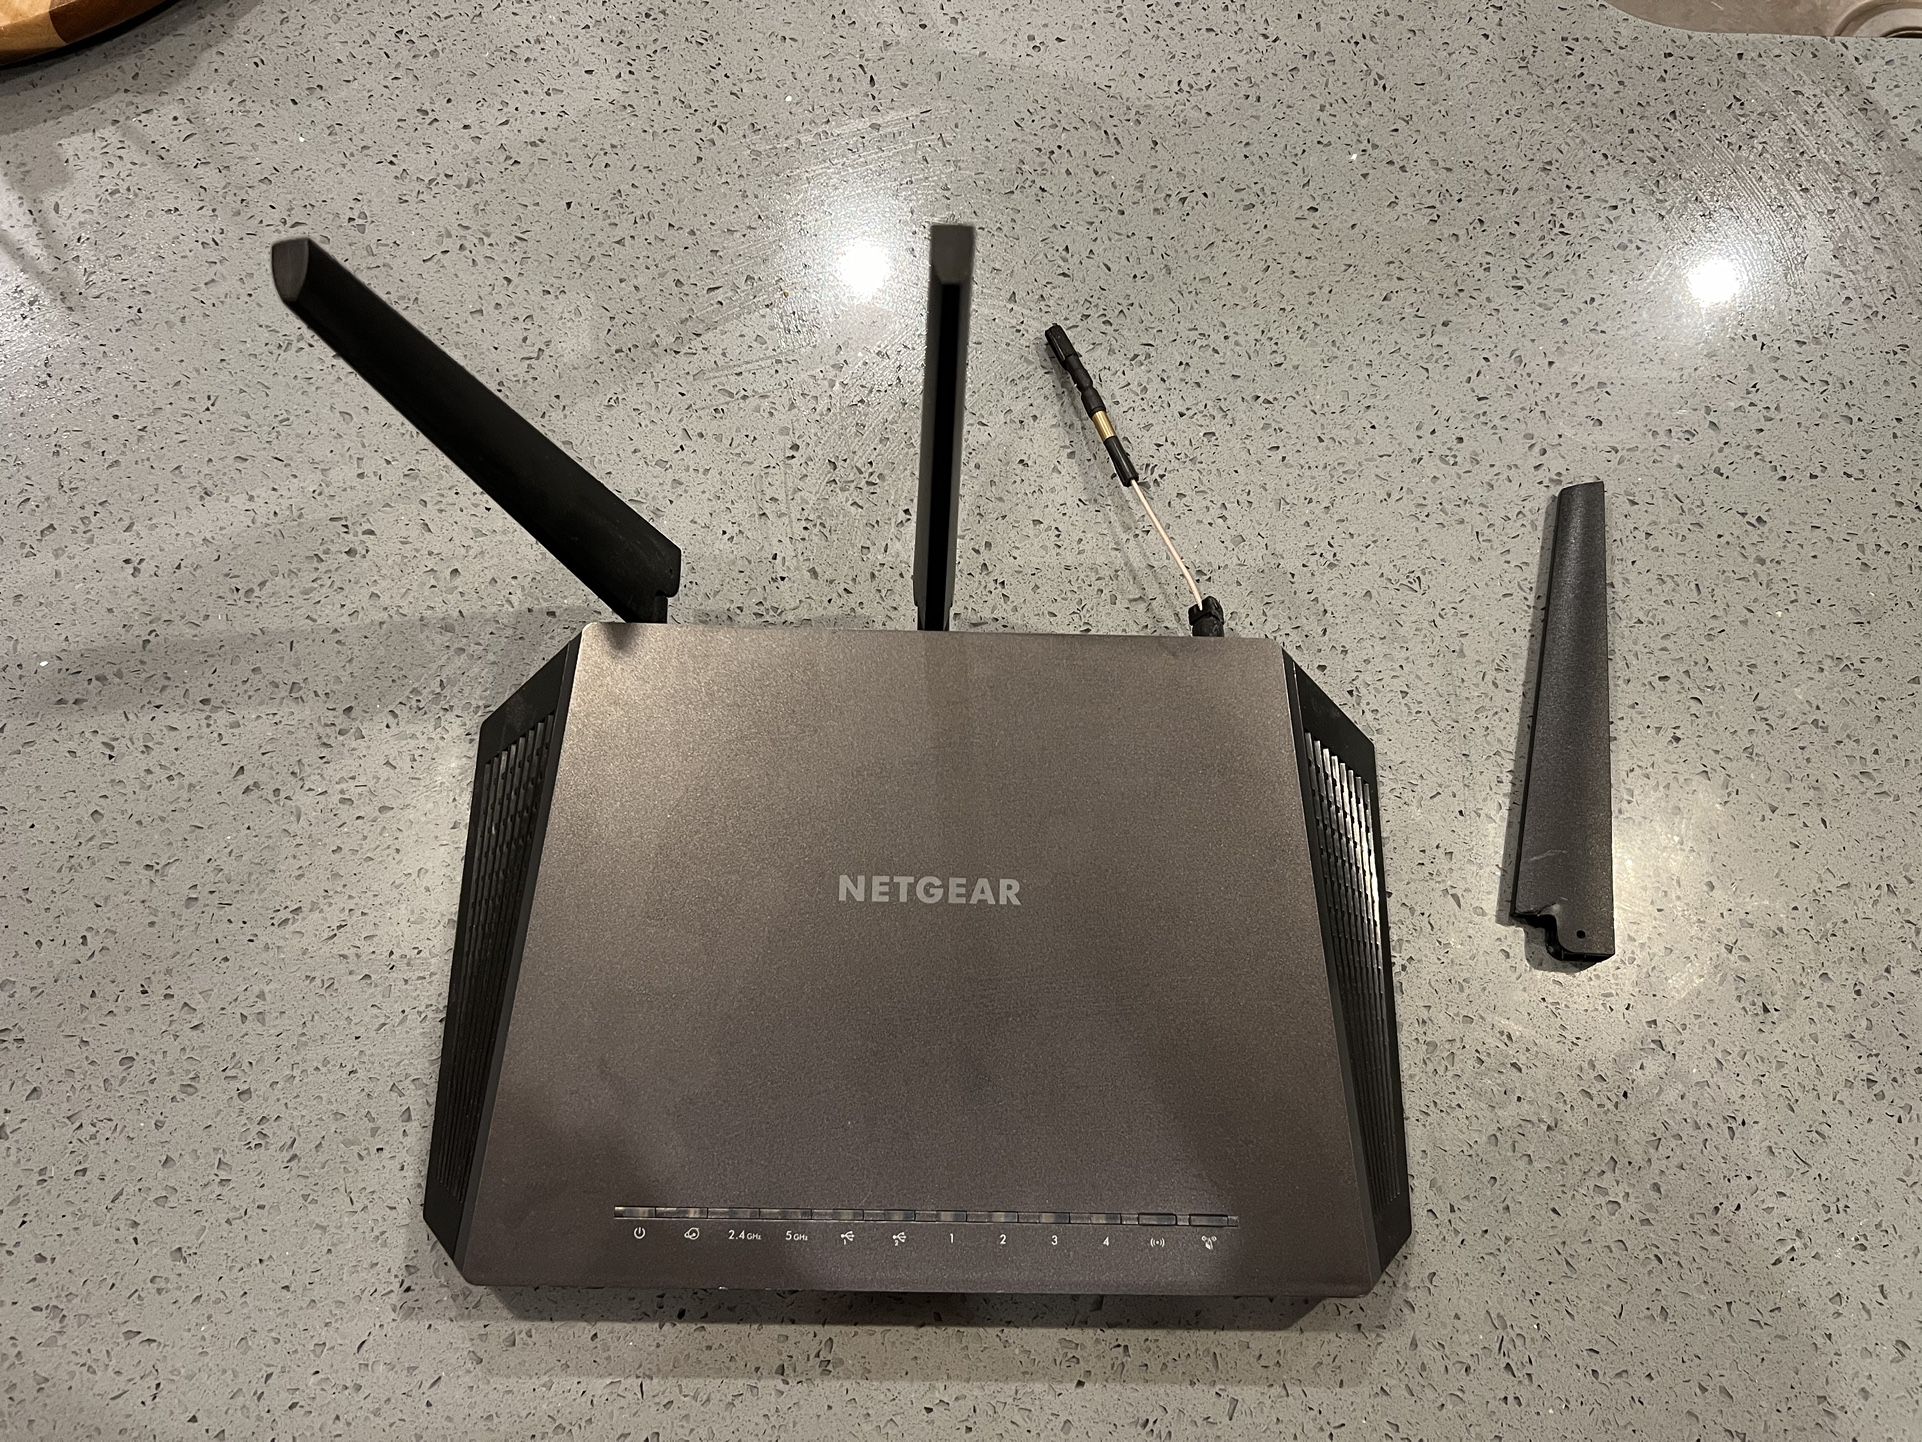 Free Netgear Nighthawk AC1900 WiFi Router - R7000